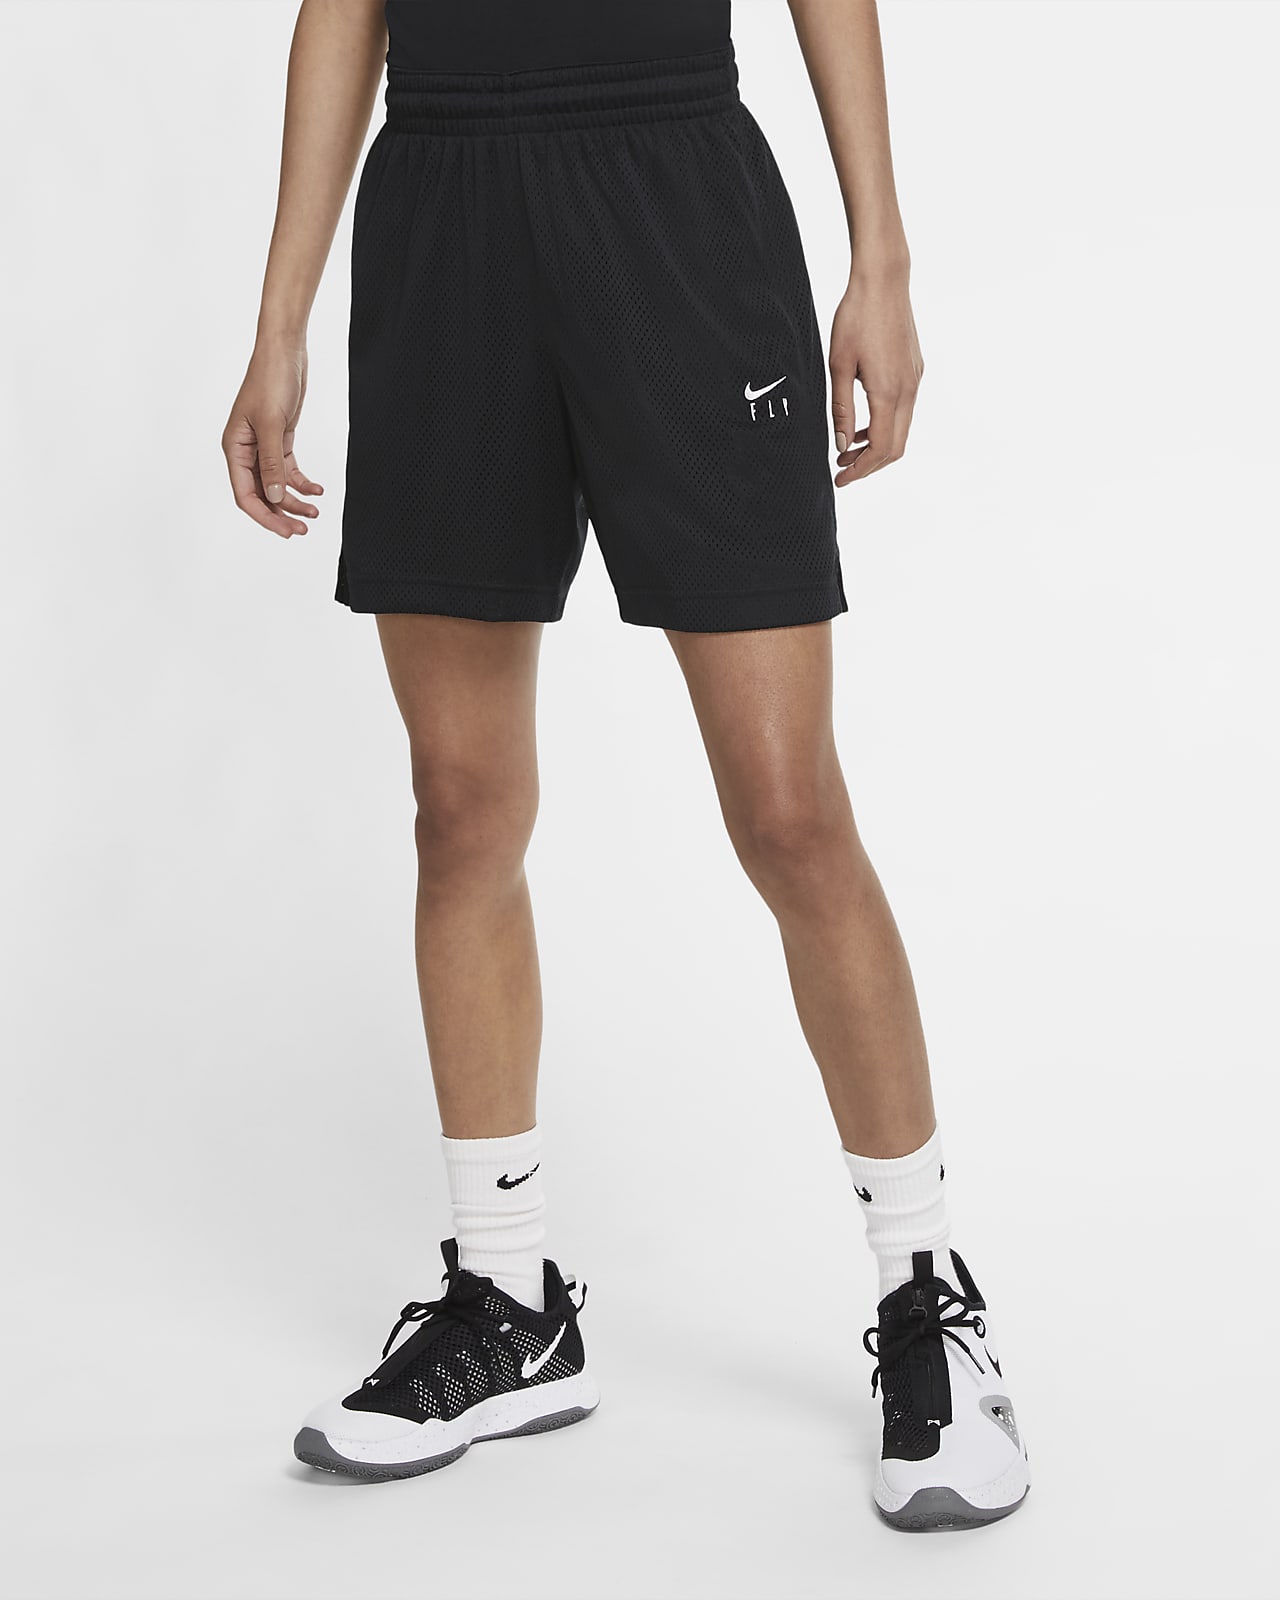 Shorts da basket Nike Swoosh Fly - Donna